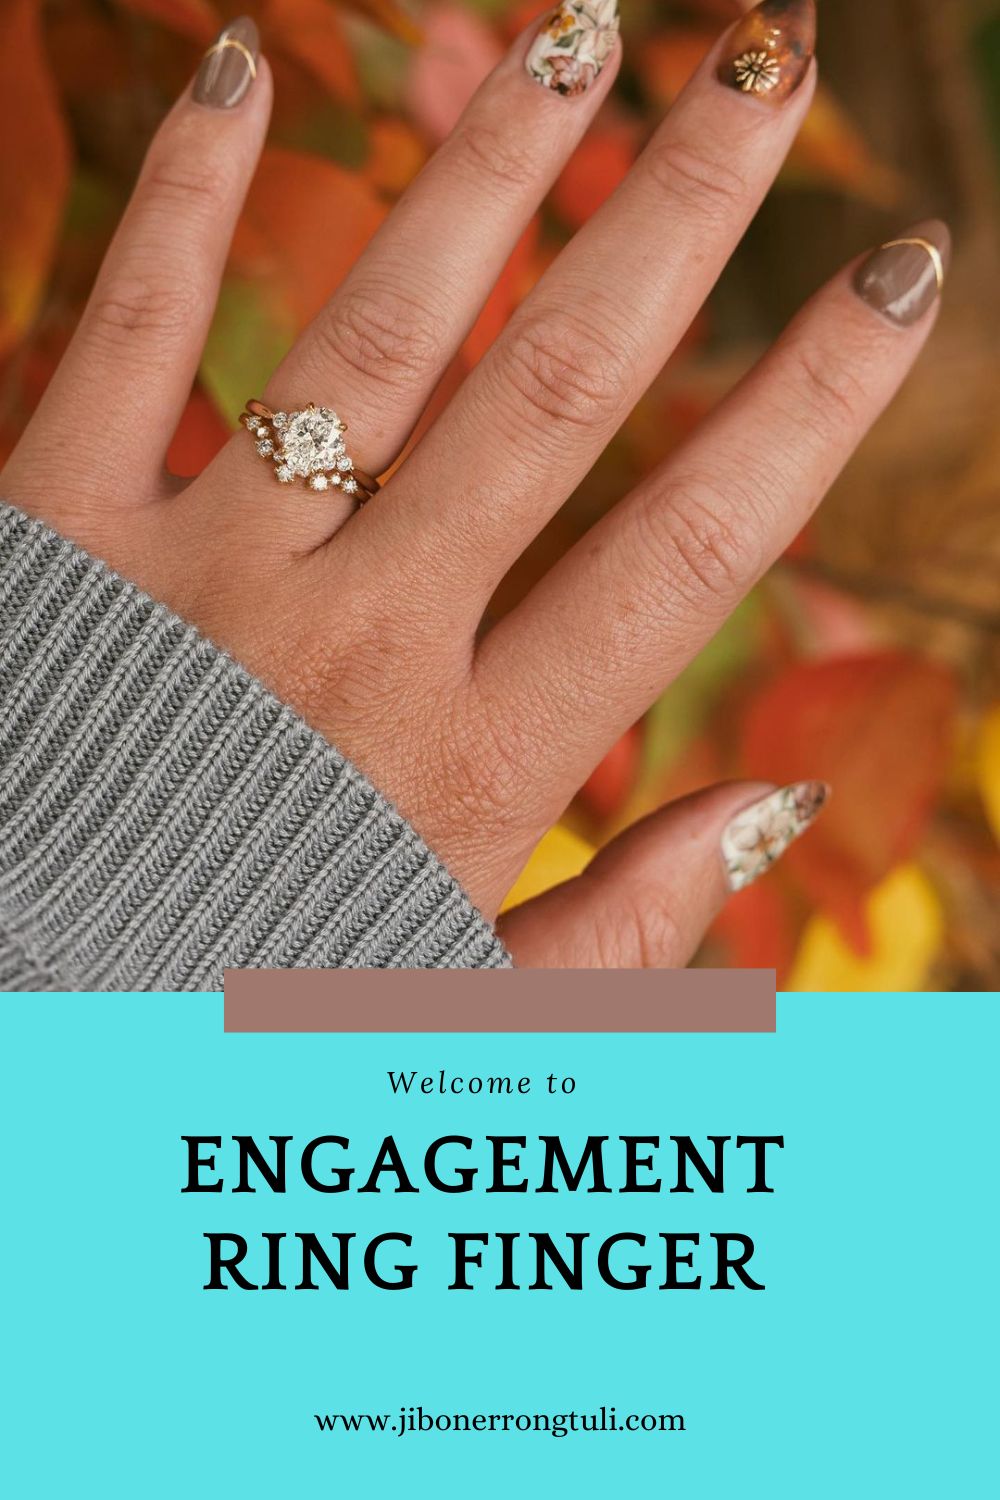 Engagement ring finger